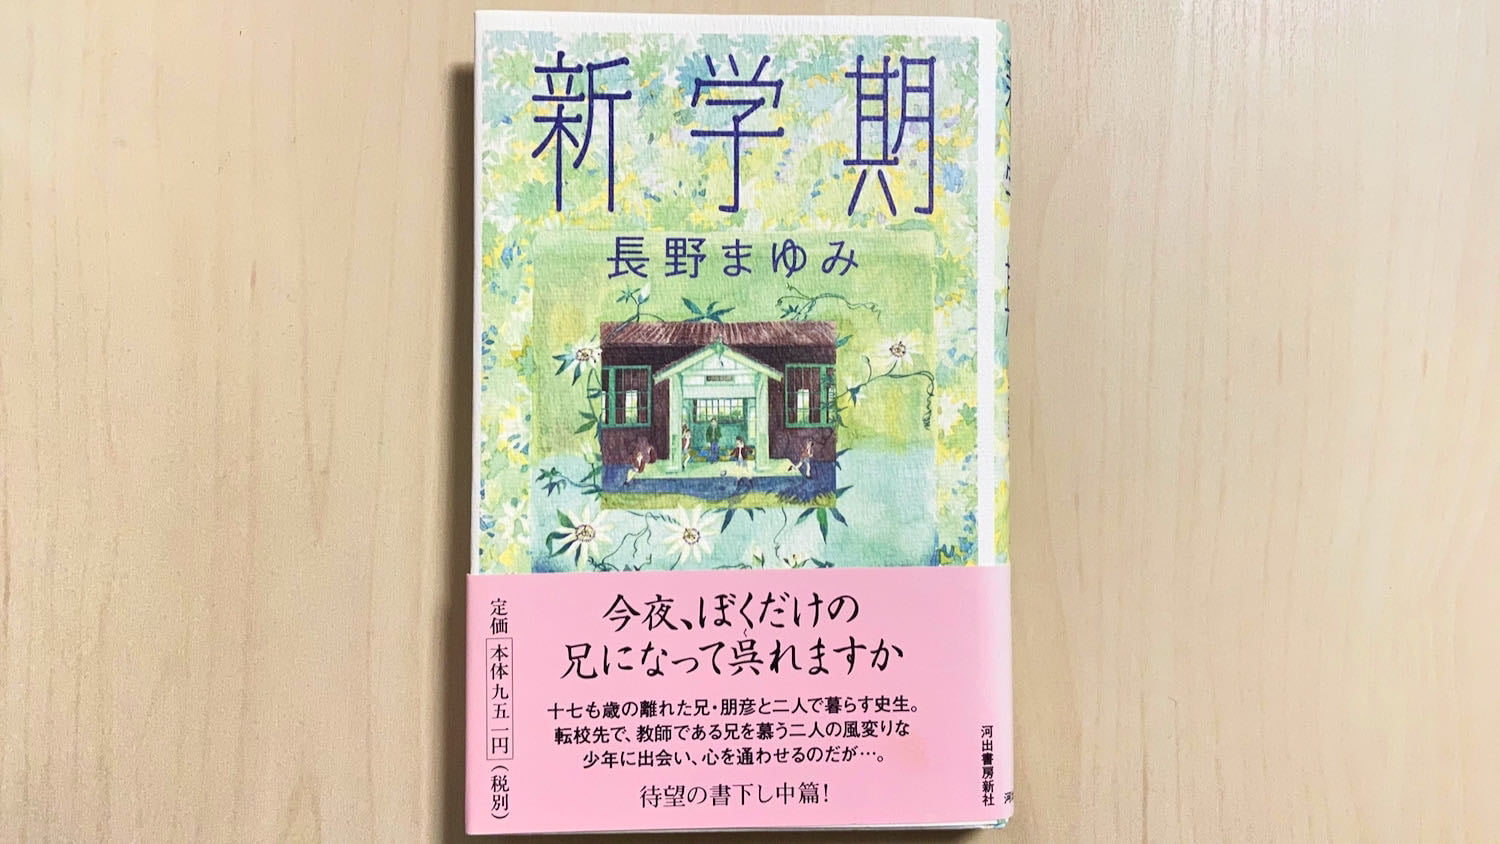 小説「新学期」by 長野まゆみ